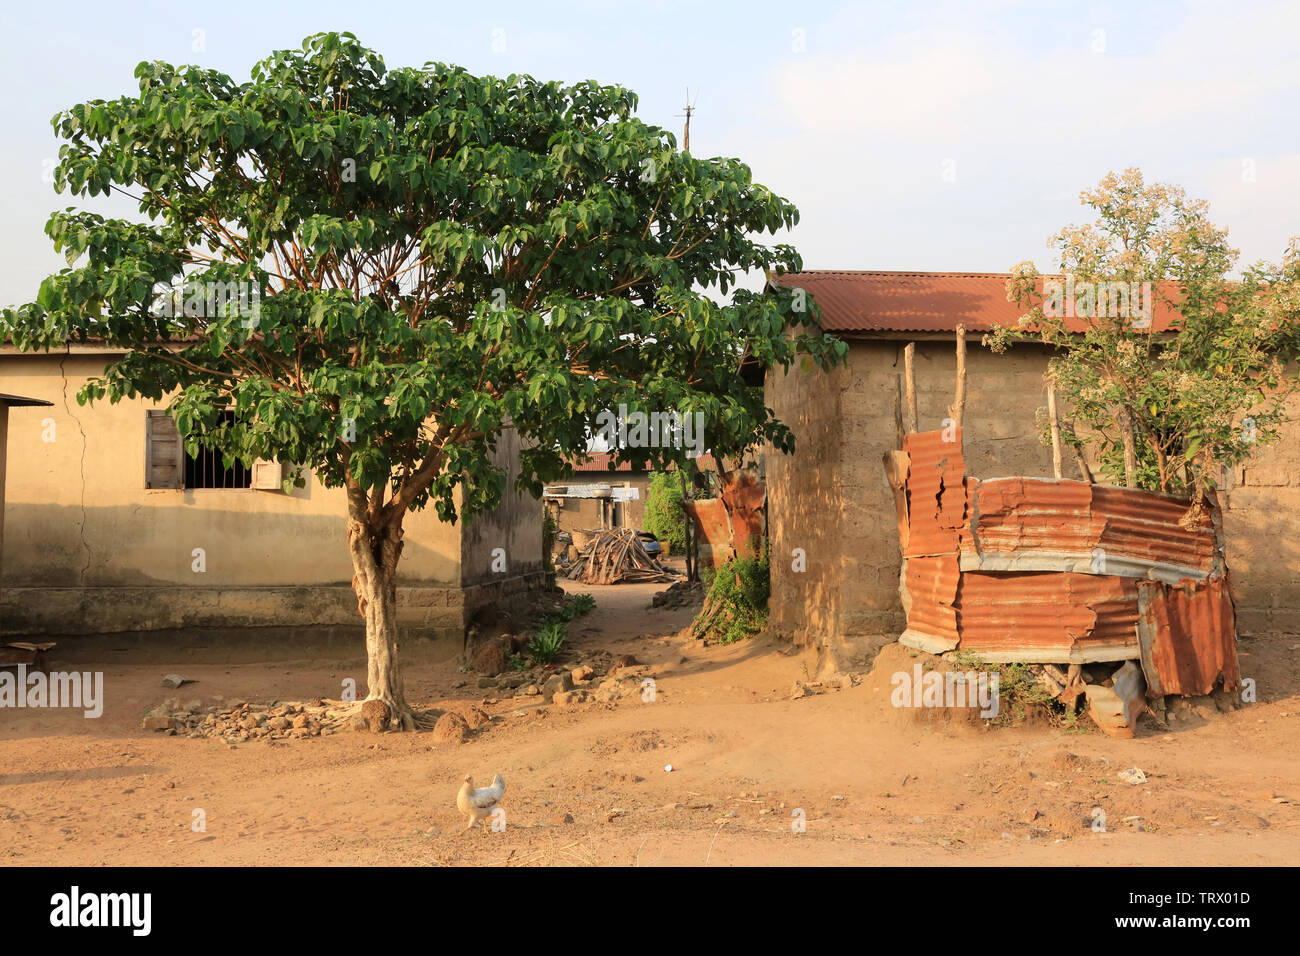 Villaggio di Datcha. Datcha Attikpayé. Togo. Afrique de l'Ouest. Foto Stock